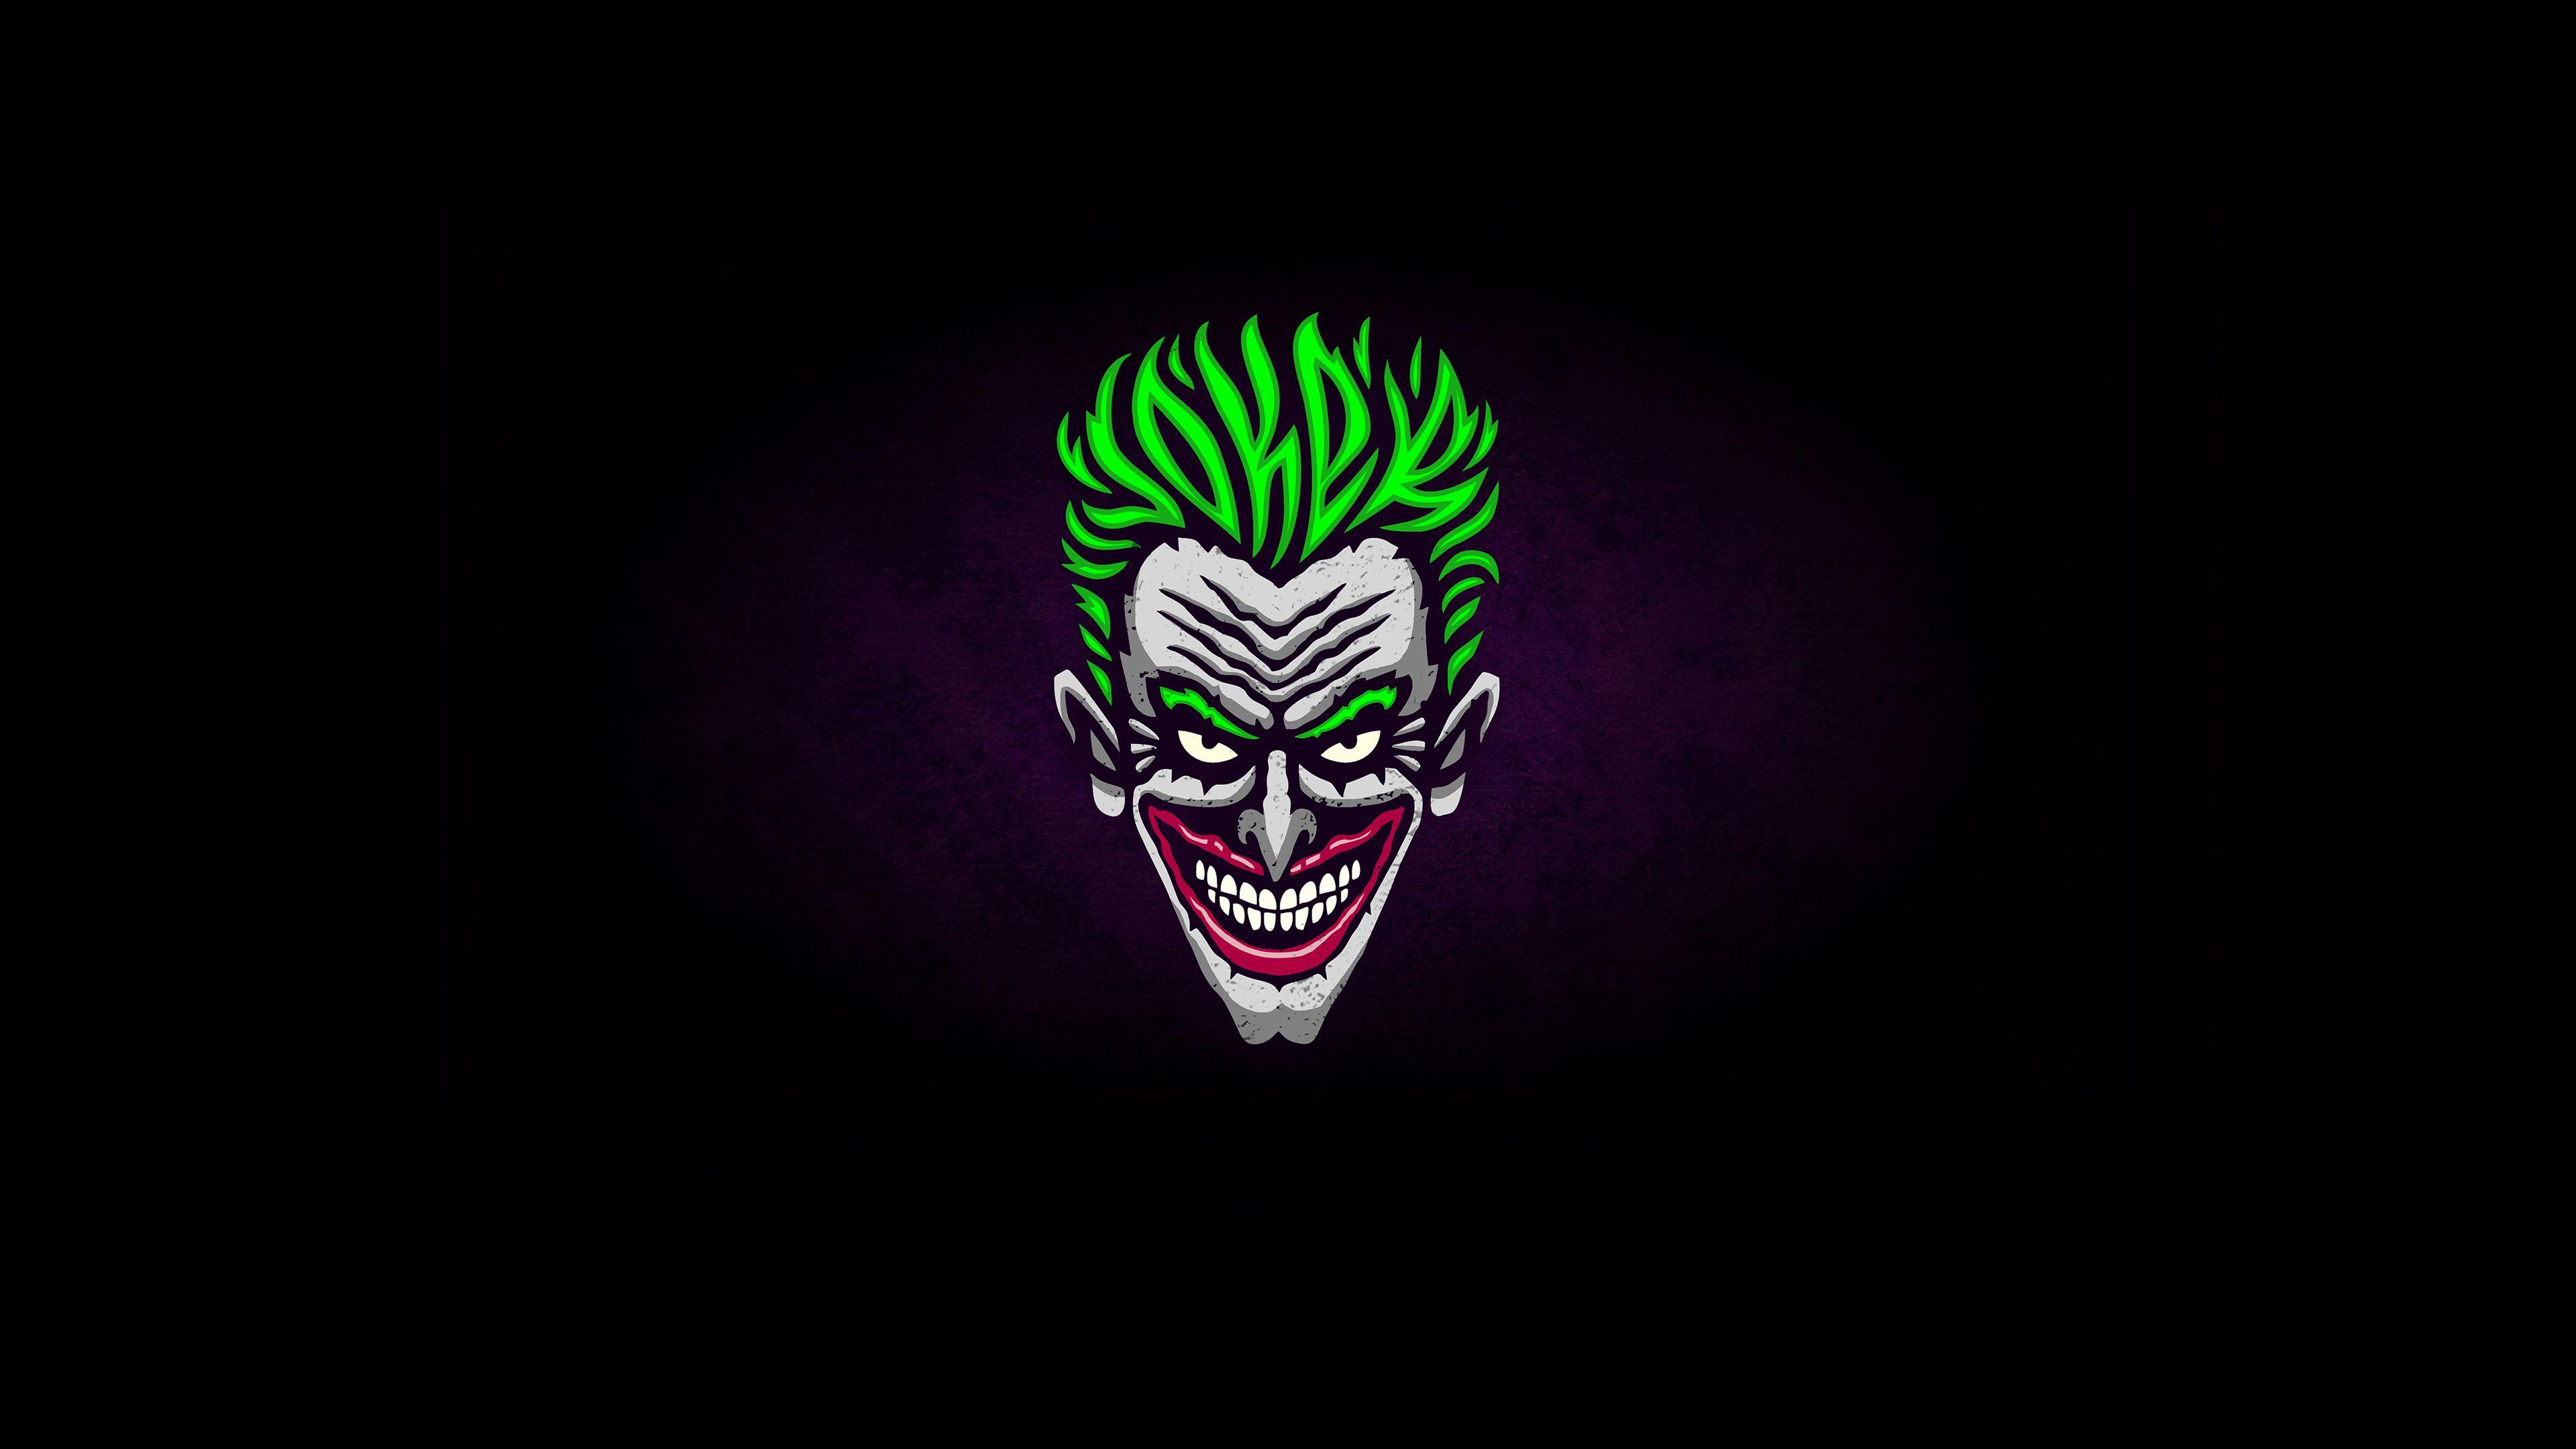 Joker Art Wallpapers Top Free Joker Art Backgrounds Wallpaperaccess